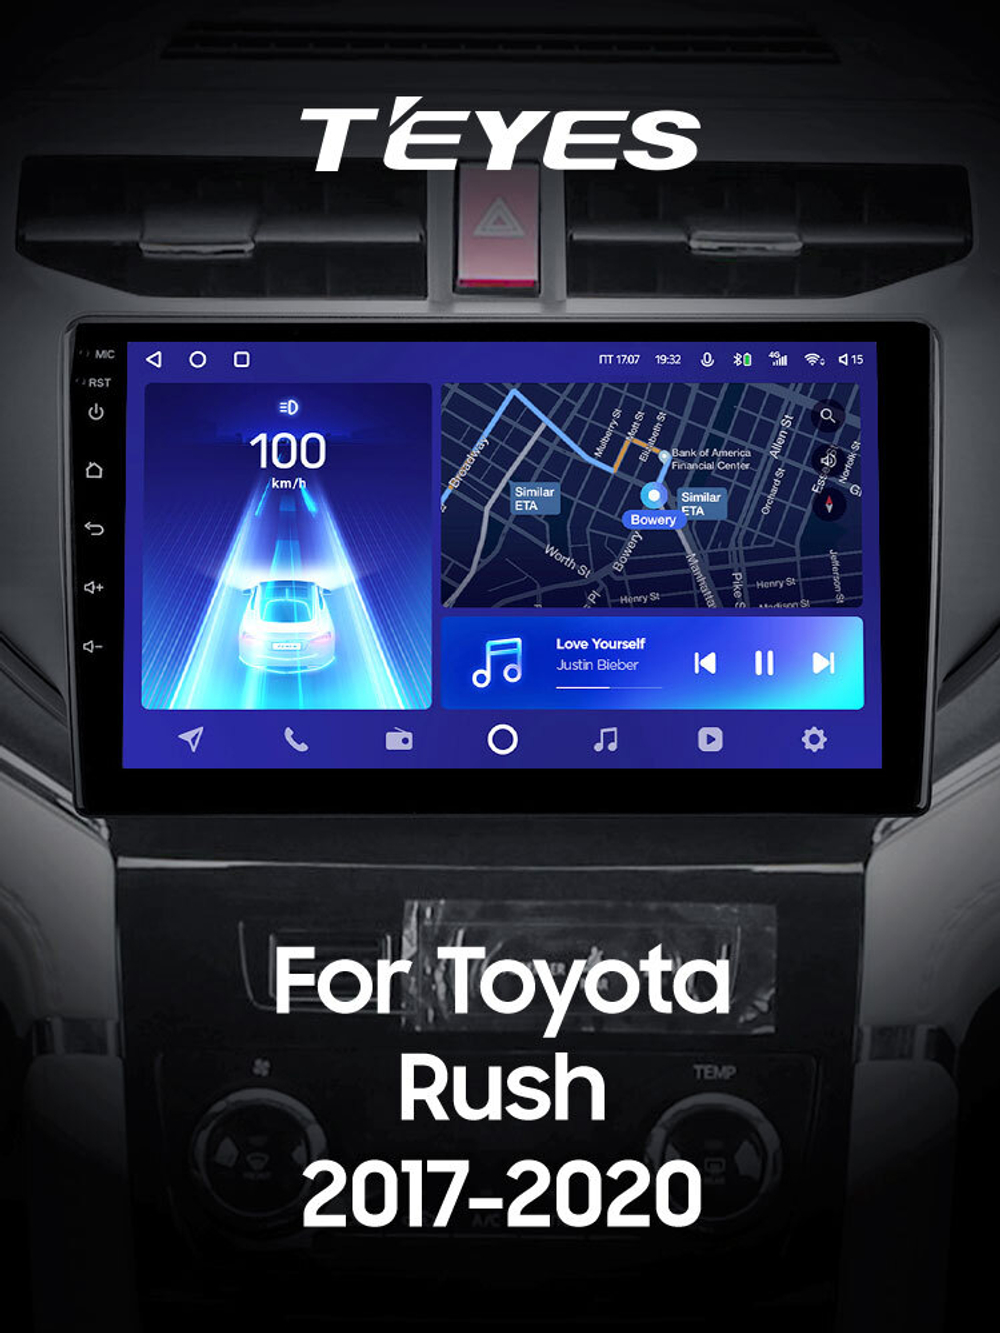 Teyes CC2 Plus  9" для Toyota Rush 2017-2020